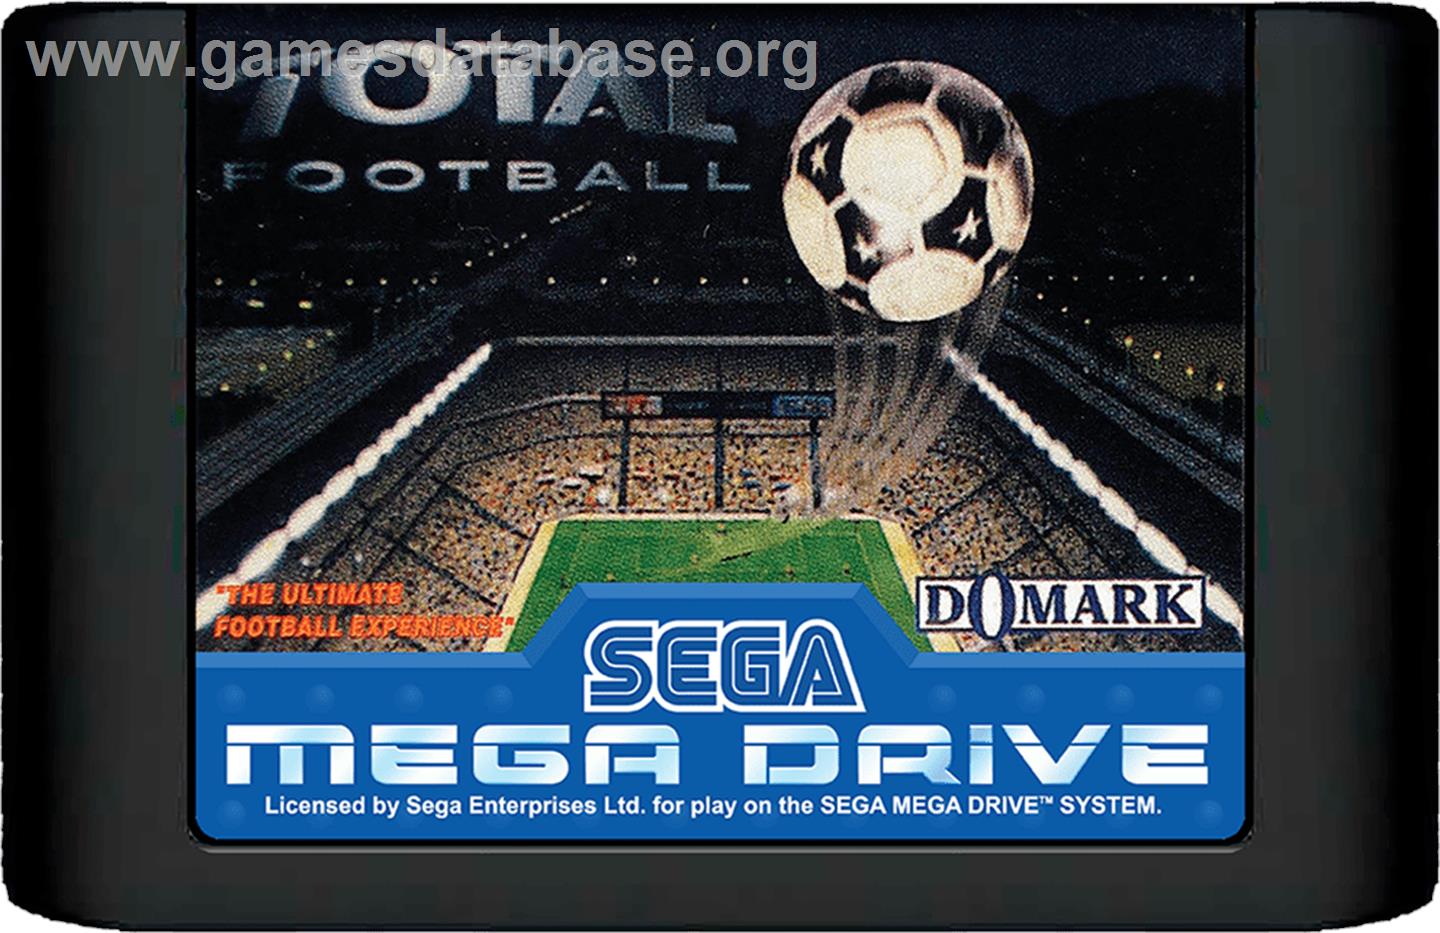 Total Football - Sega Genesis - Artwork - Cartridge